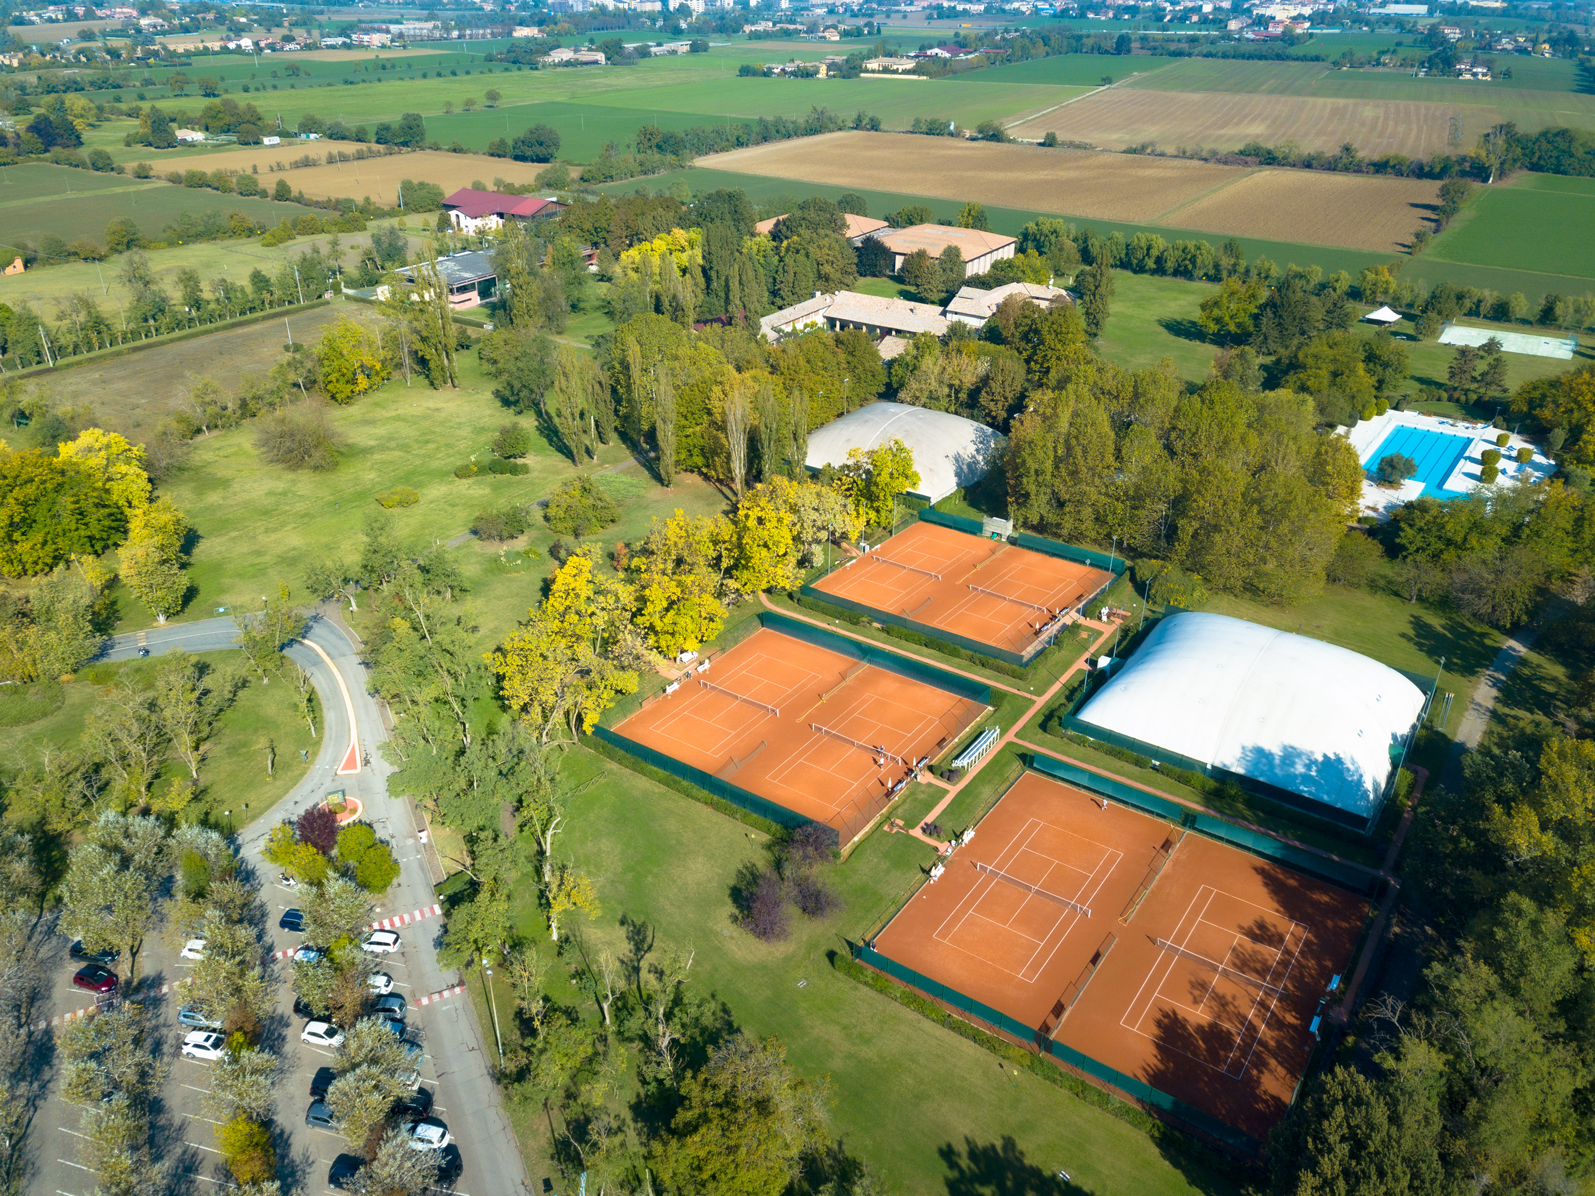 campi-tennis-drone2